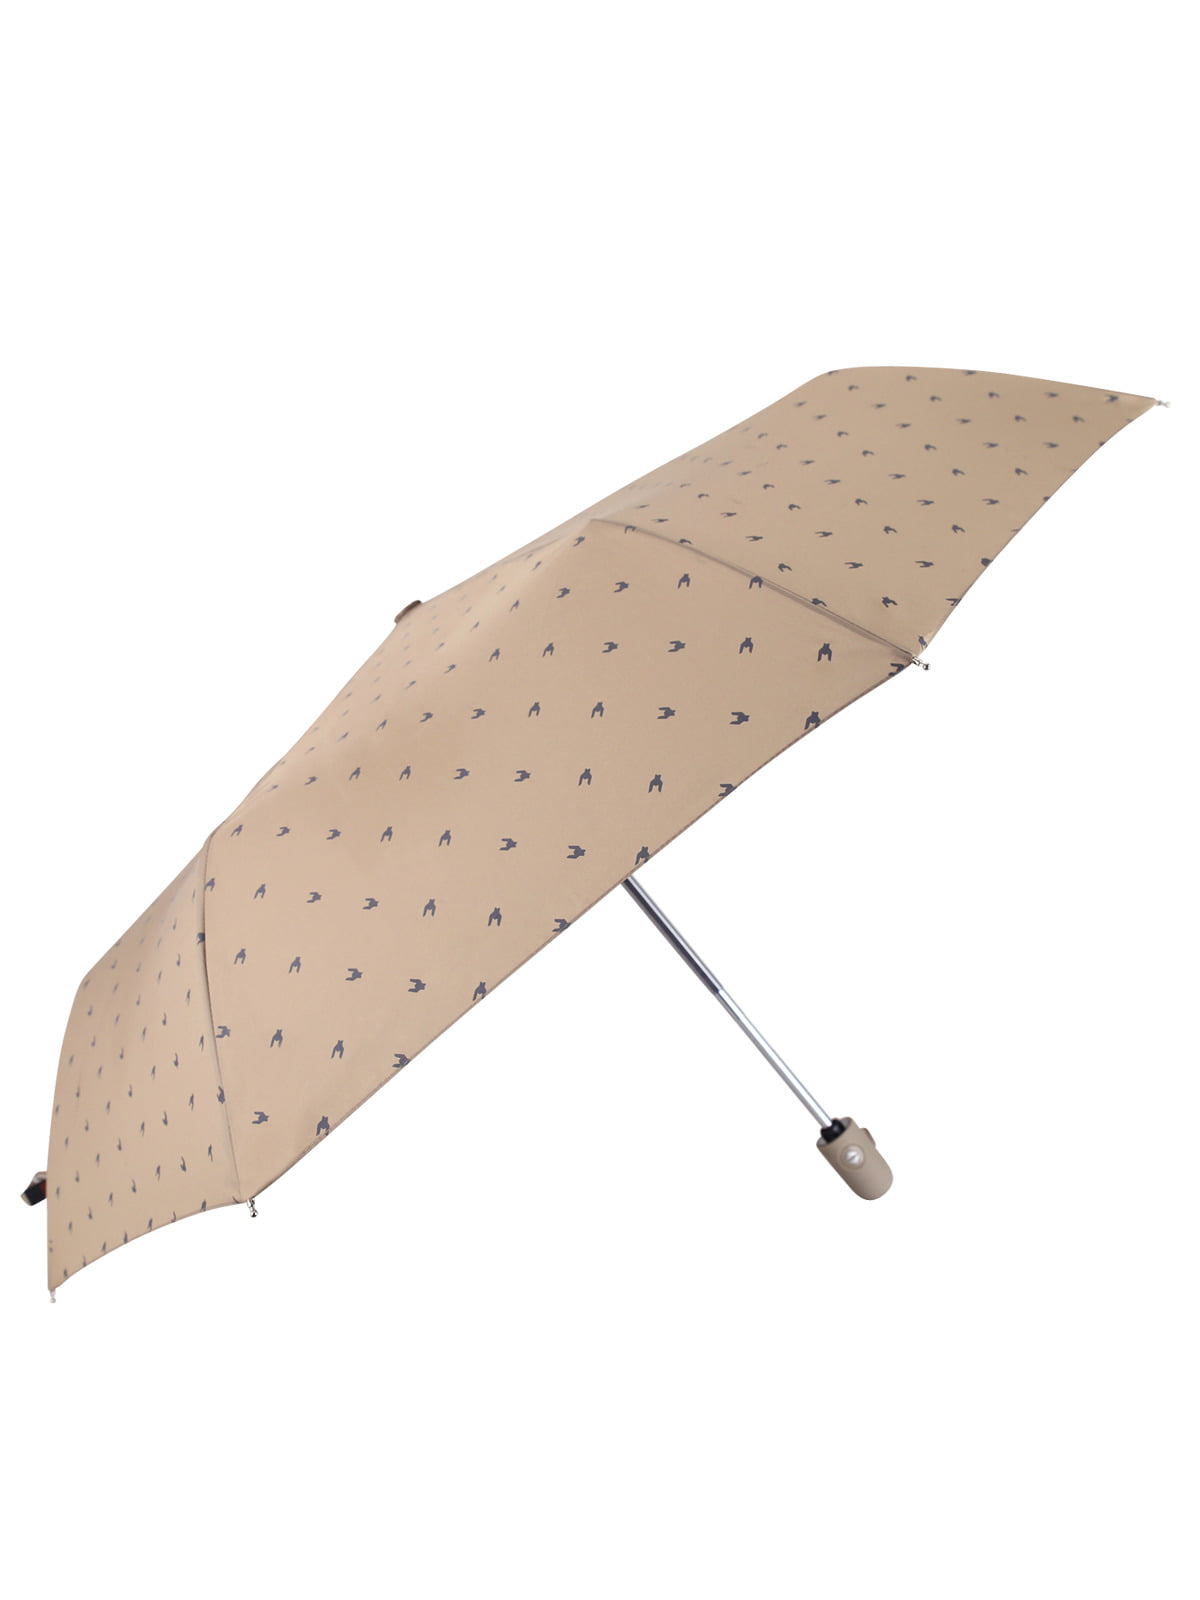 3단우산 패턴 자동 우산 원터치 장마철 우산 LDDR040